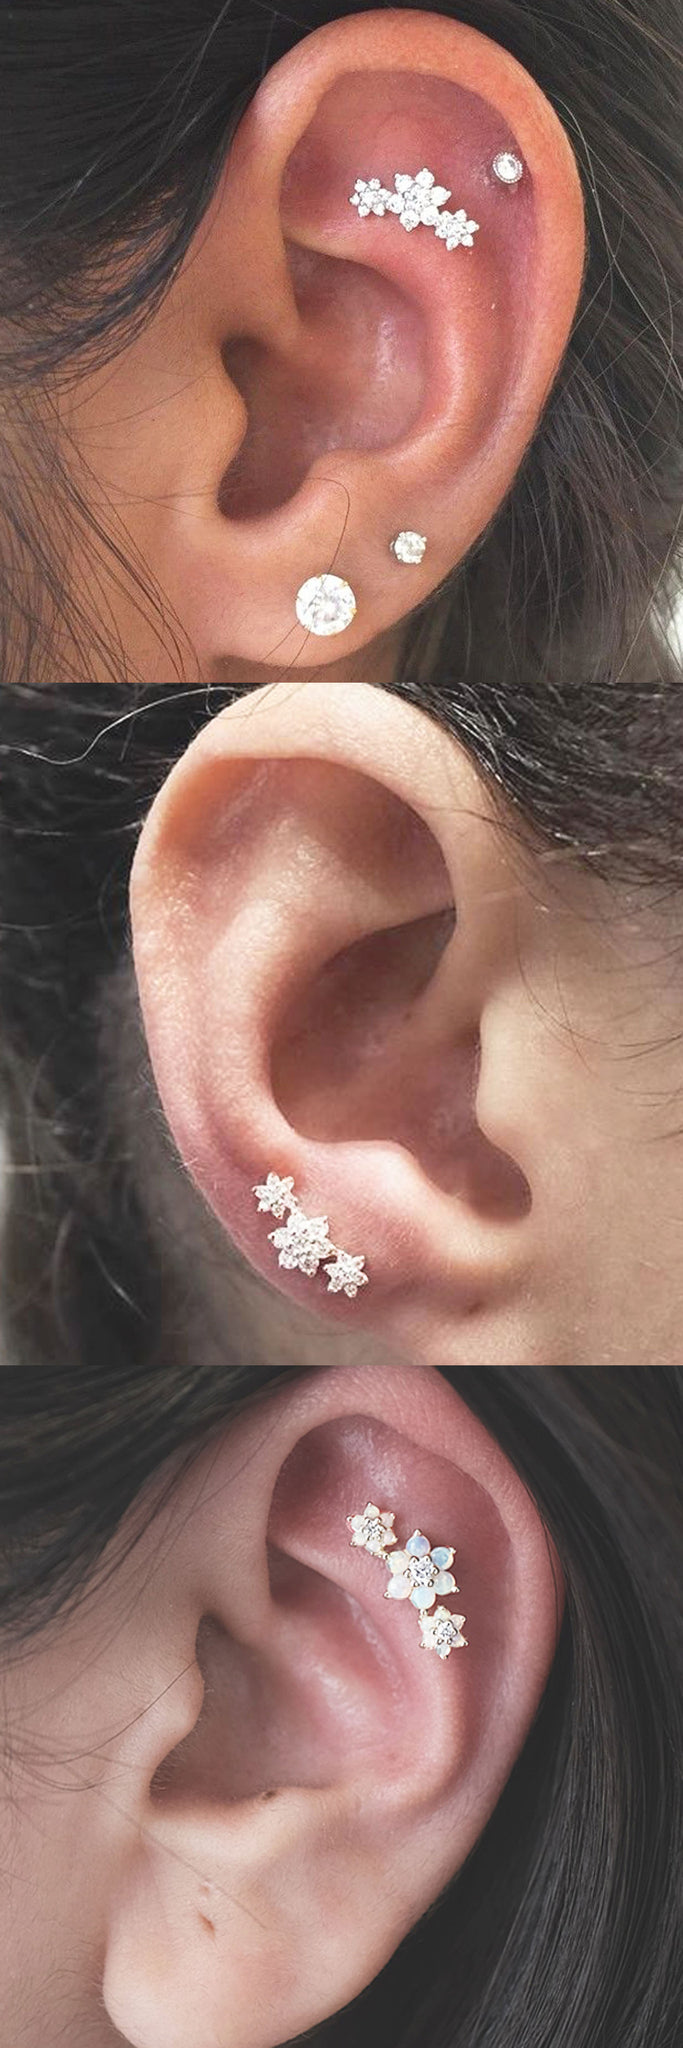 Delicate Ear Piercing Ideas Jewelry at MyBodiArt.com - Triple 3 Crystal Flower Constellation Earring - Ear Studs